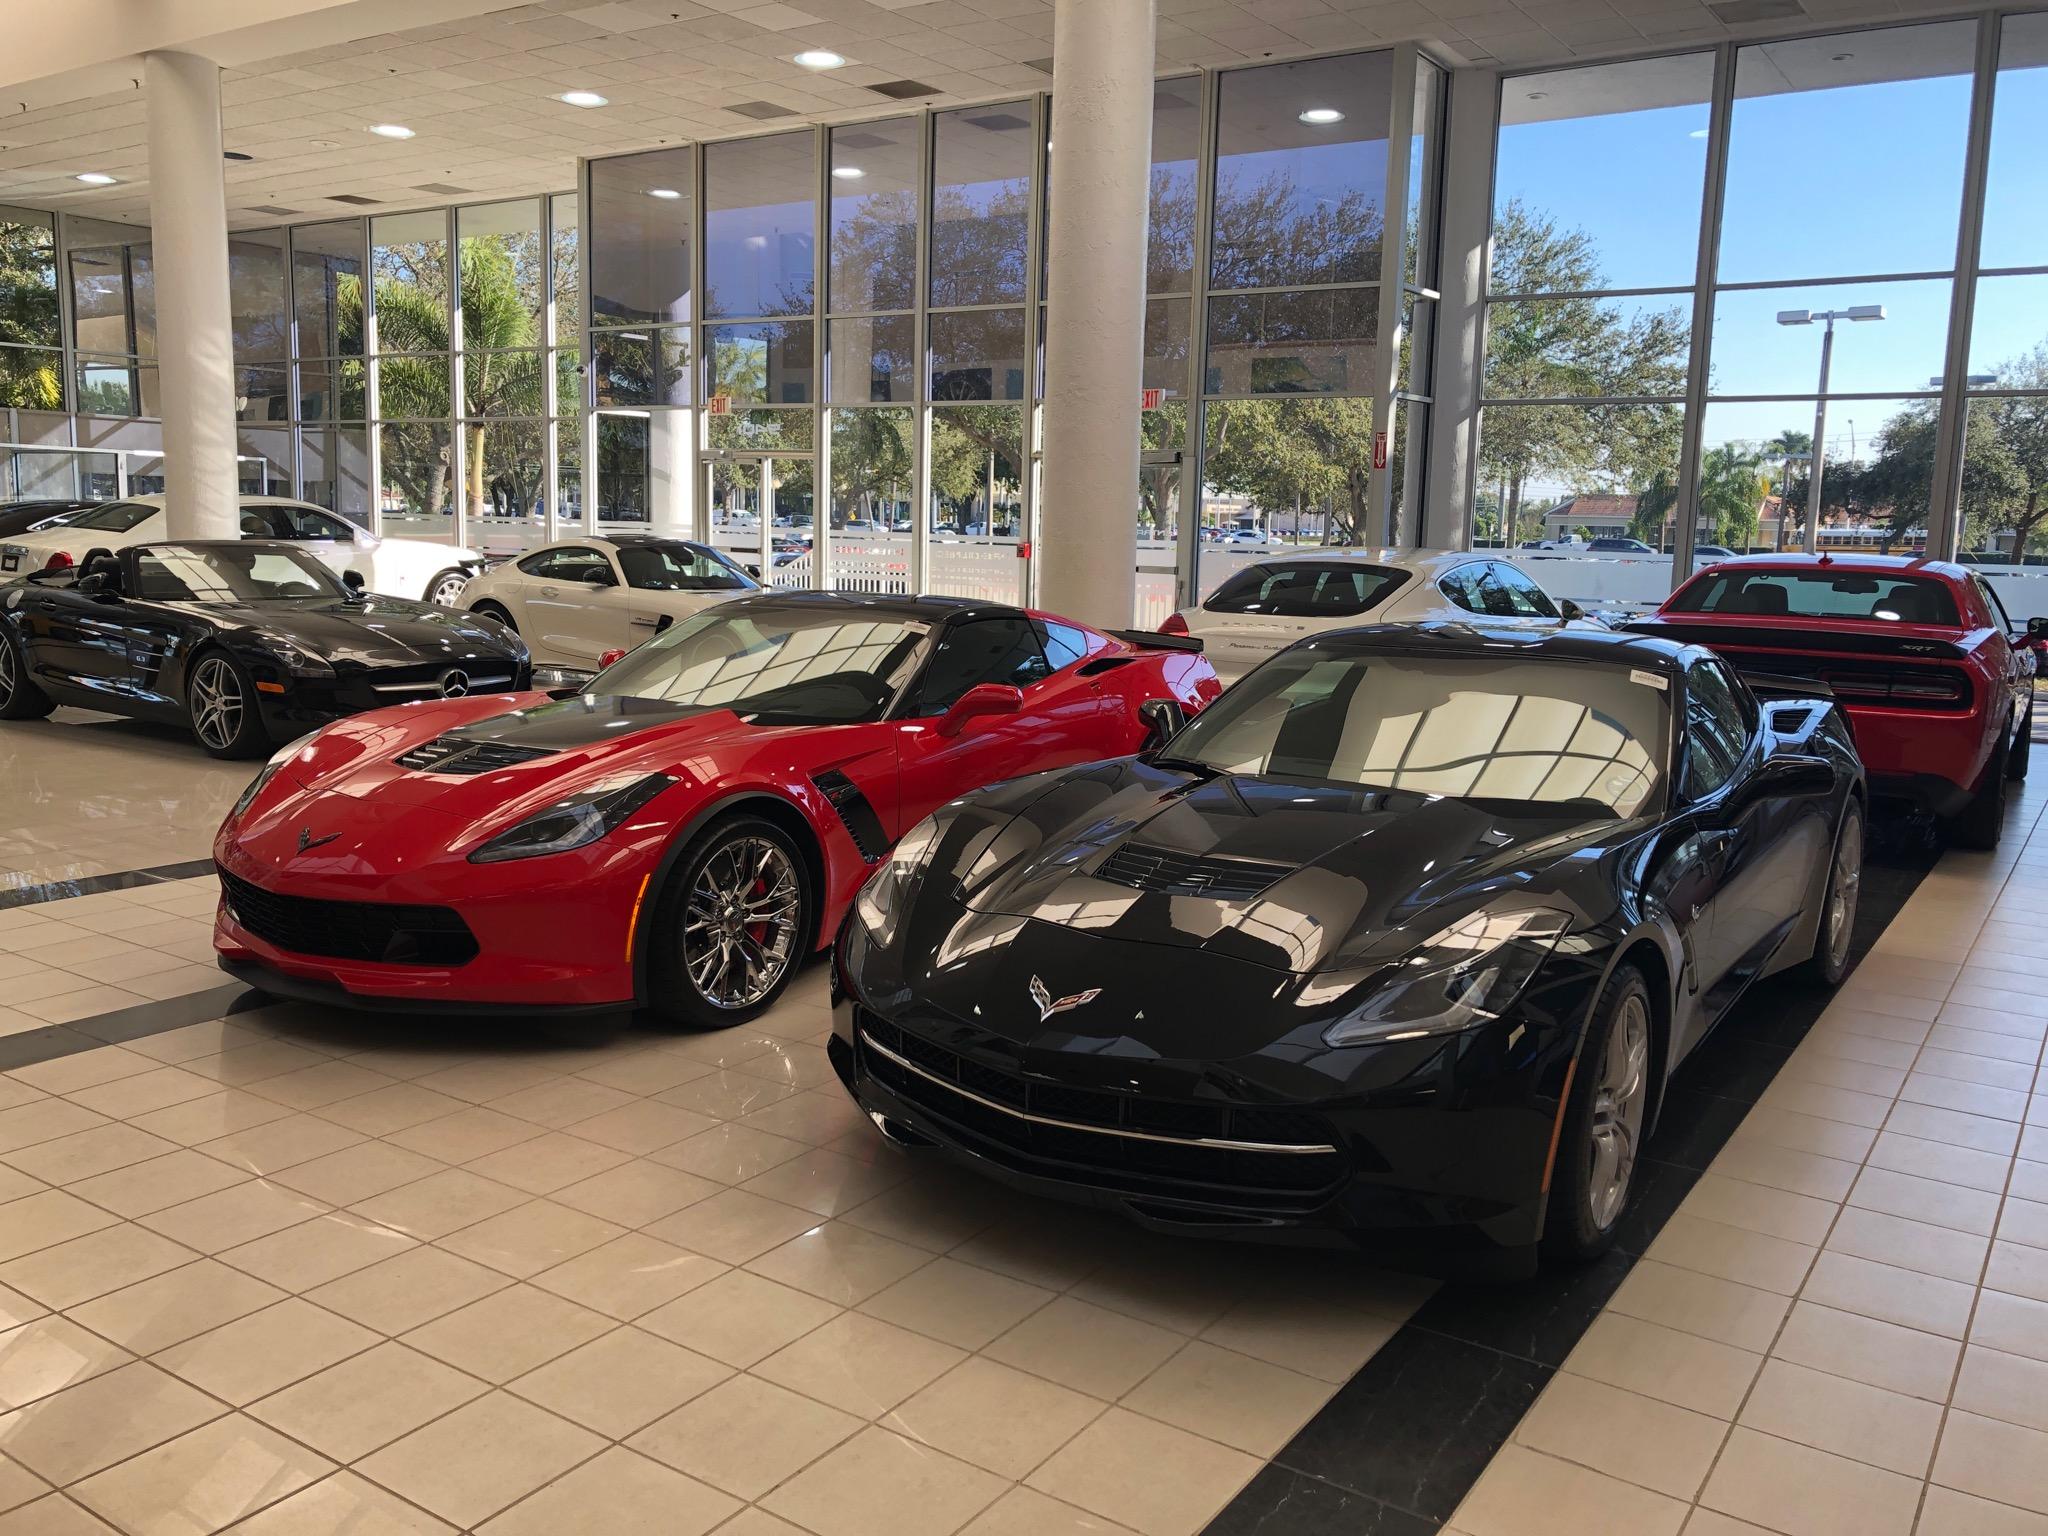 Com a nova loja de carros de luxo, a Al Hendrickson fecha o leque de opções de compras para o consumidor em todos os segmentos automotivos